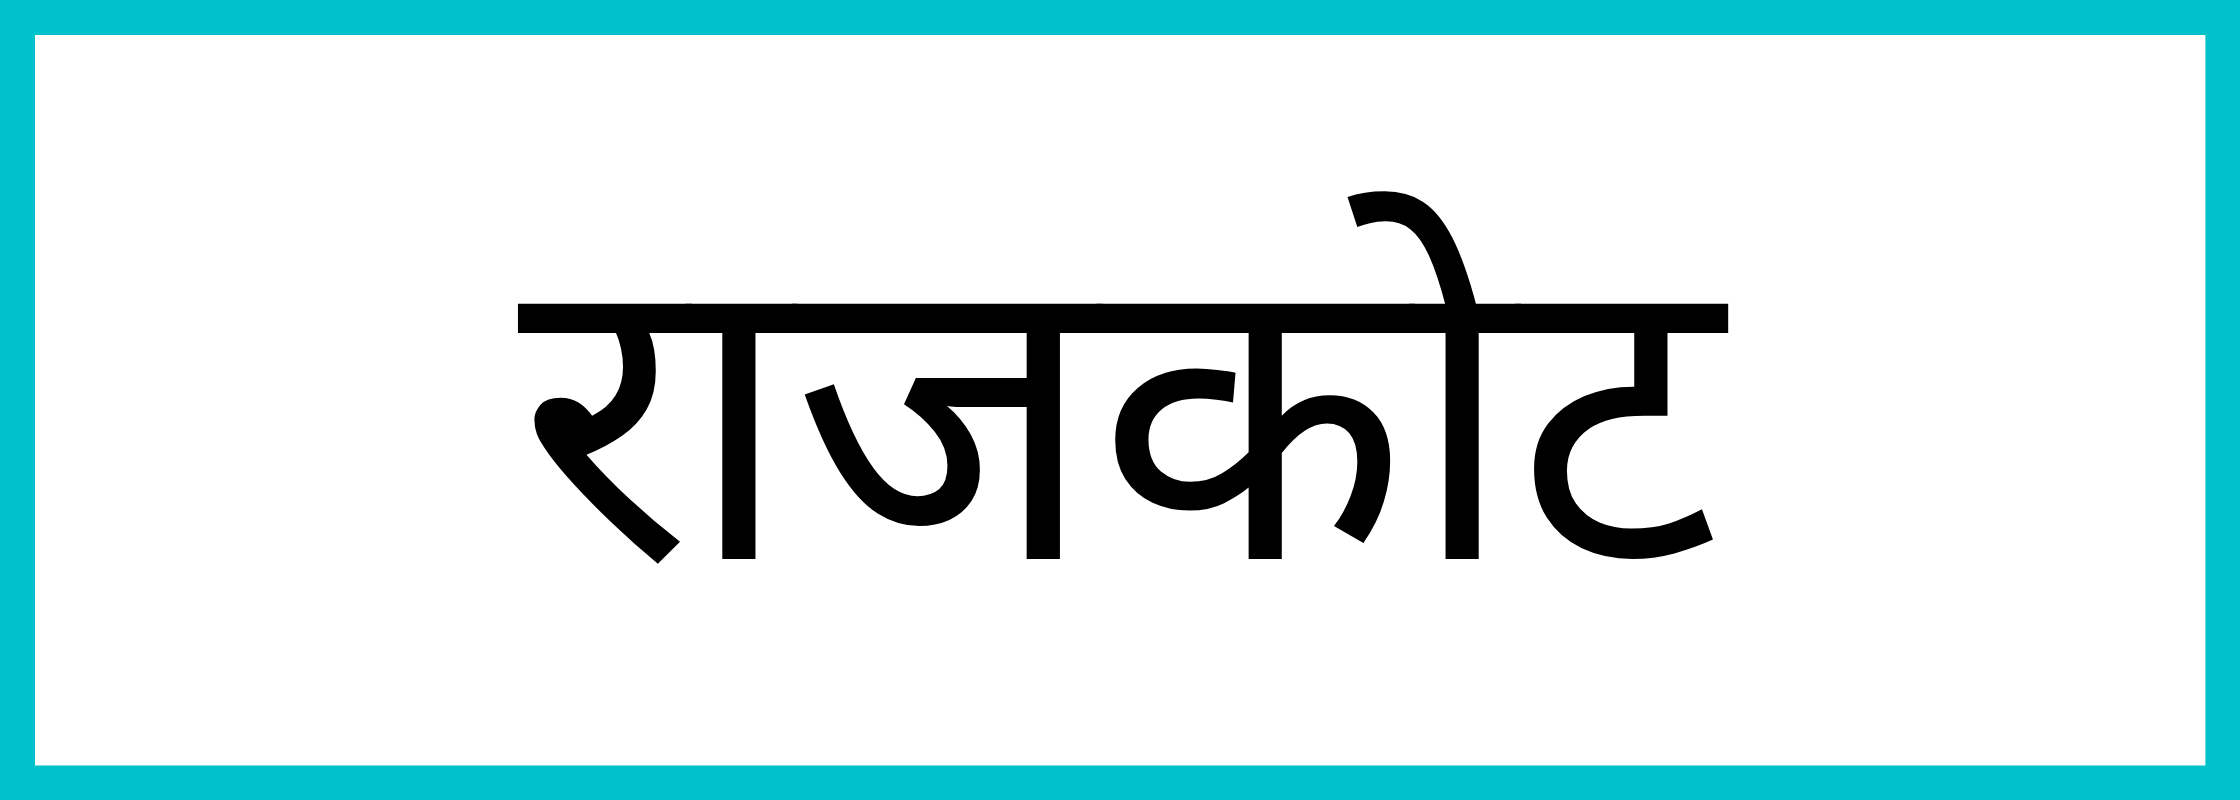 राजकोट-Rajkot-mandi-bhav